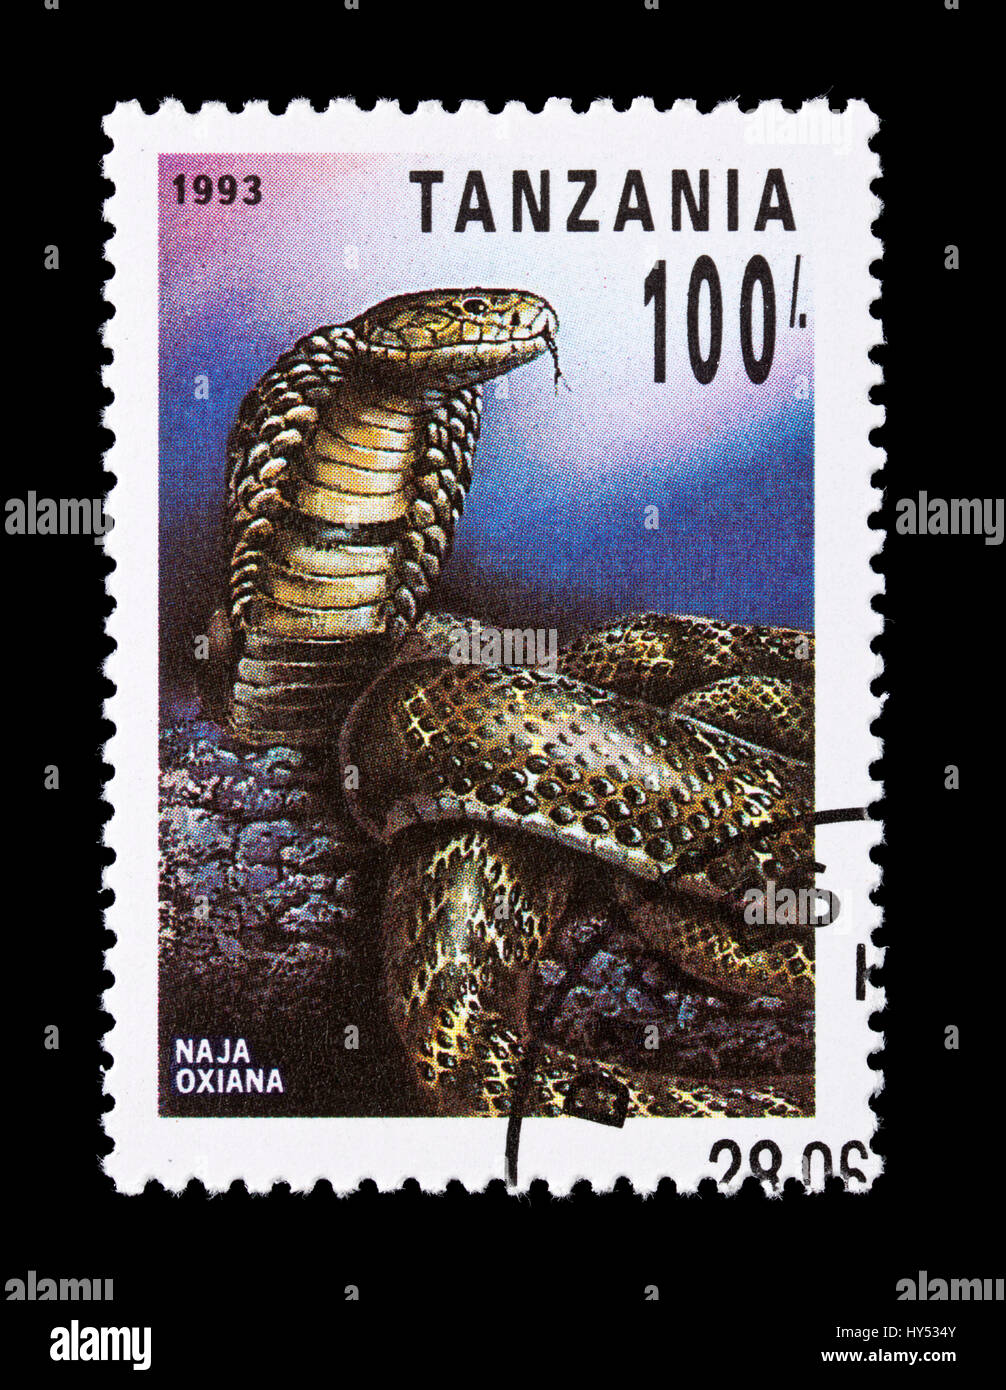 Sello de Tanzania que retratan un Caspian cobra (Naja oxiana) Foto de stock